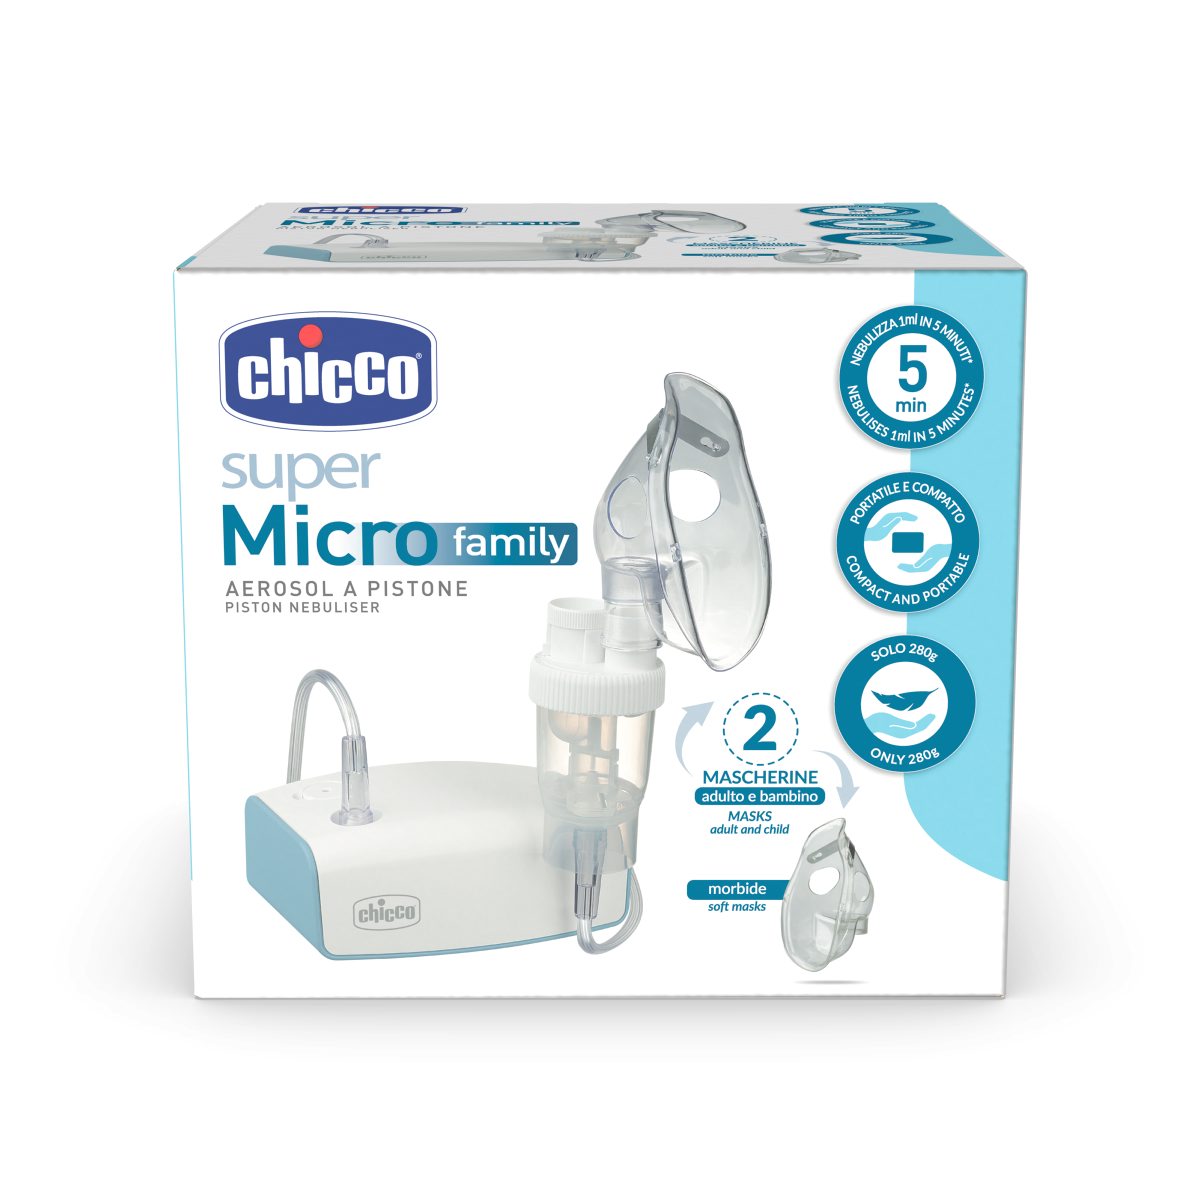 CHICCO - Aerosol Portatile Super Micro Family - Universo Bimbo